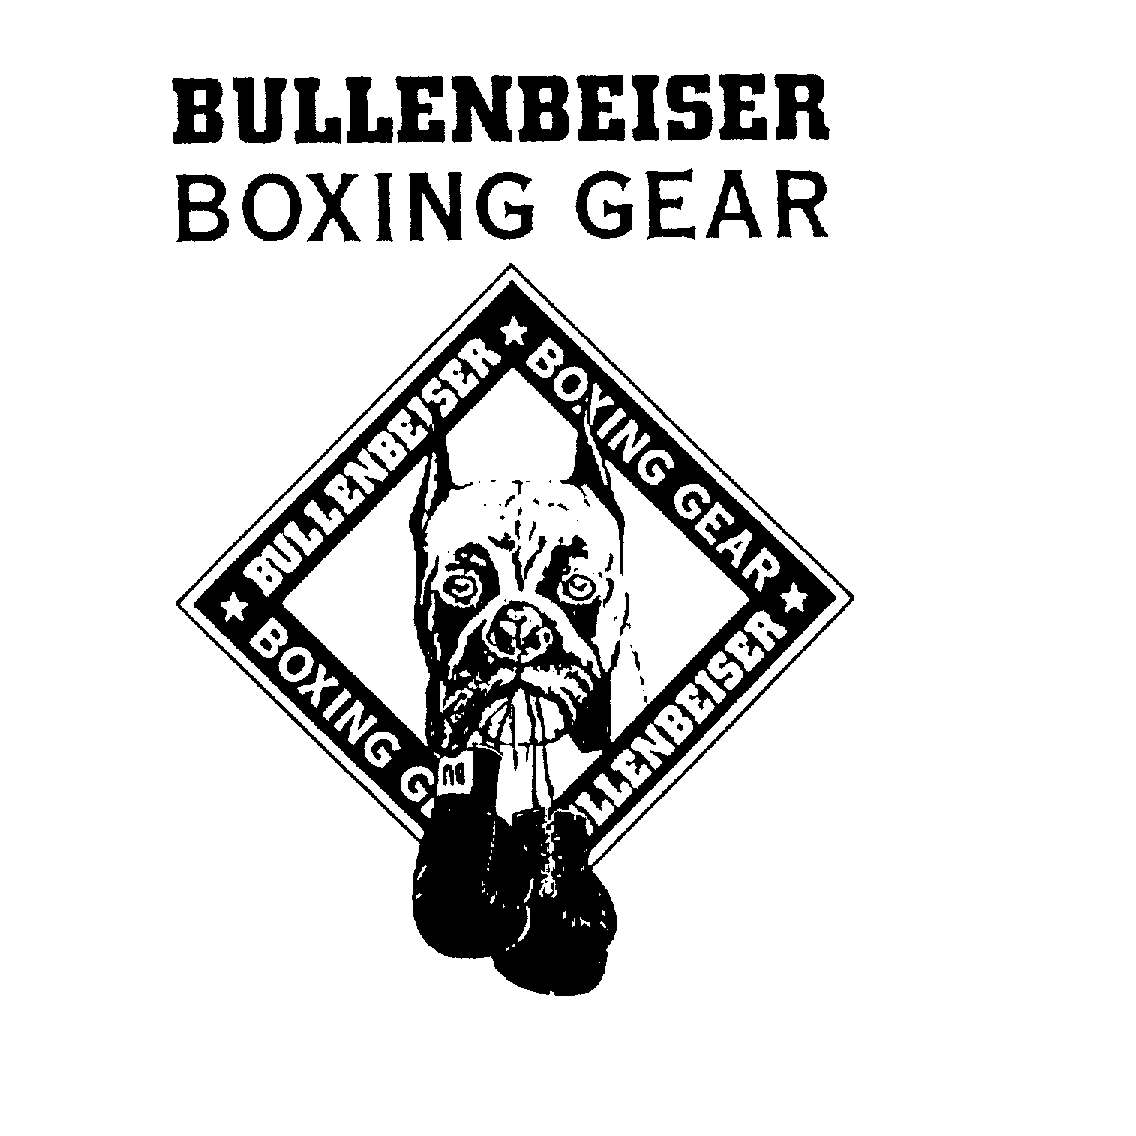  BULLENBEISER BOXING GEAR